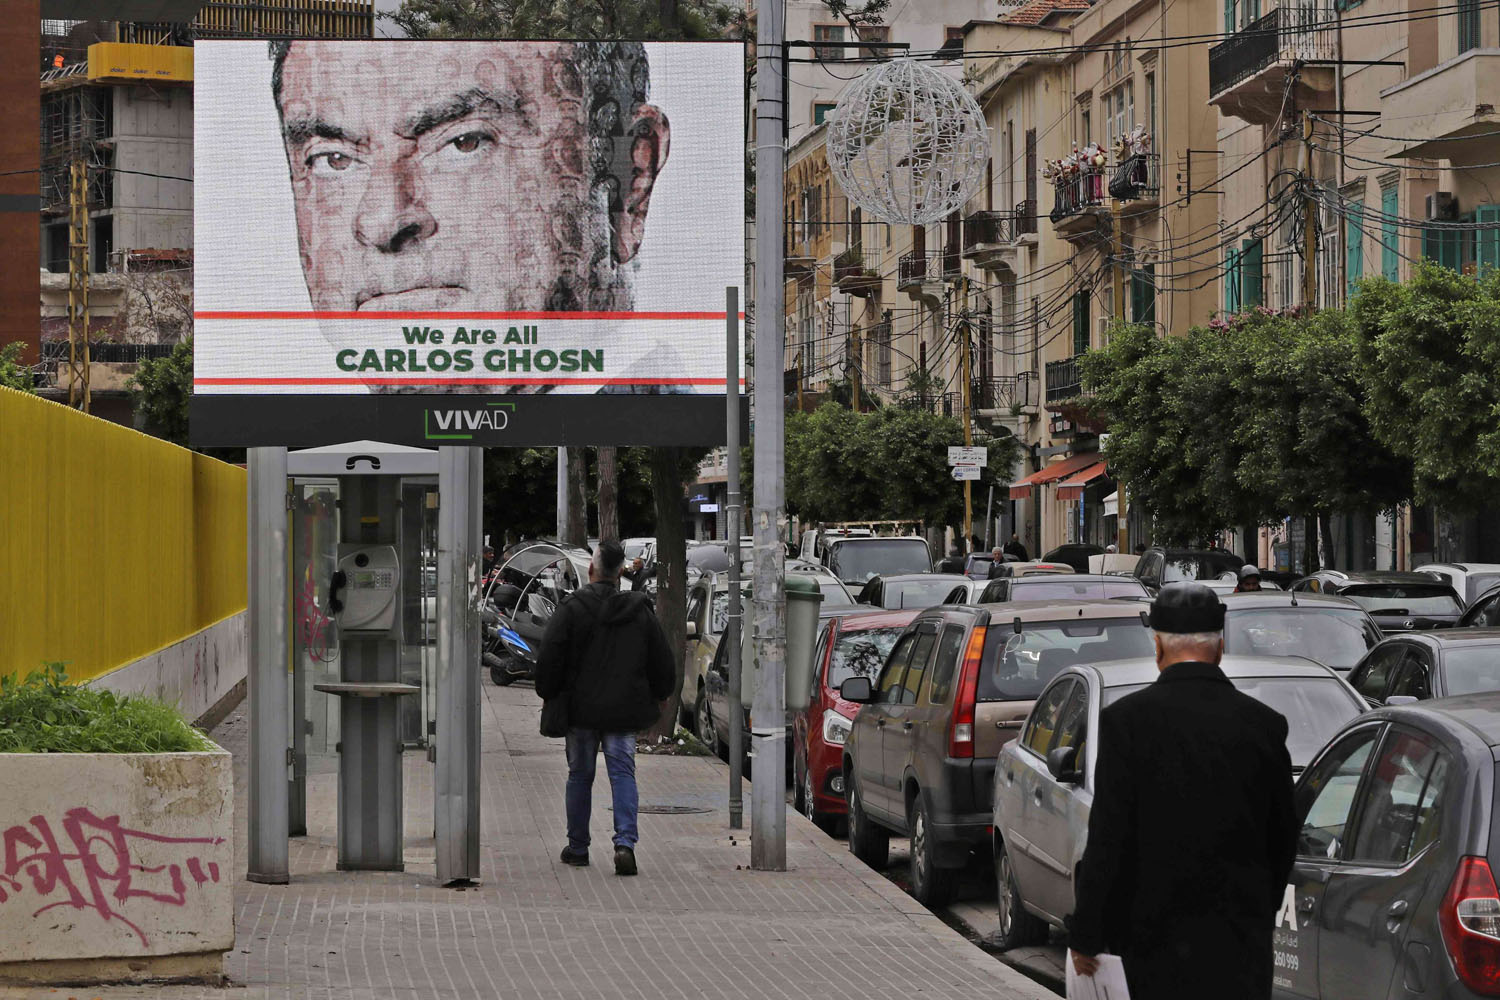 تعاطف كبير مع كارلوس غصن في الشارع اللبناني